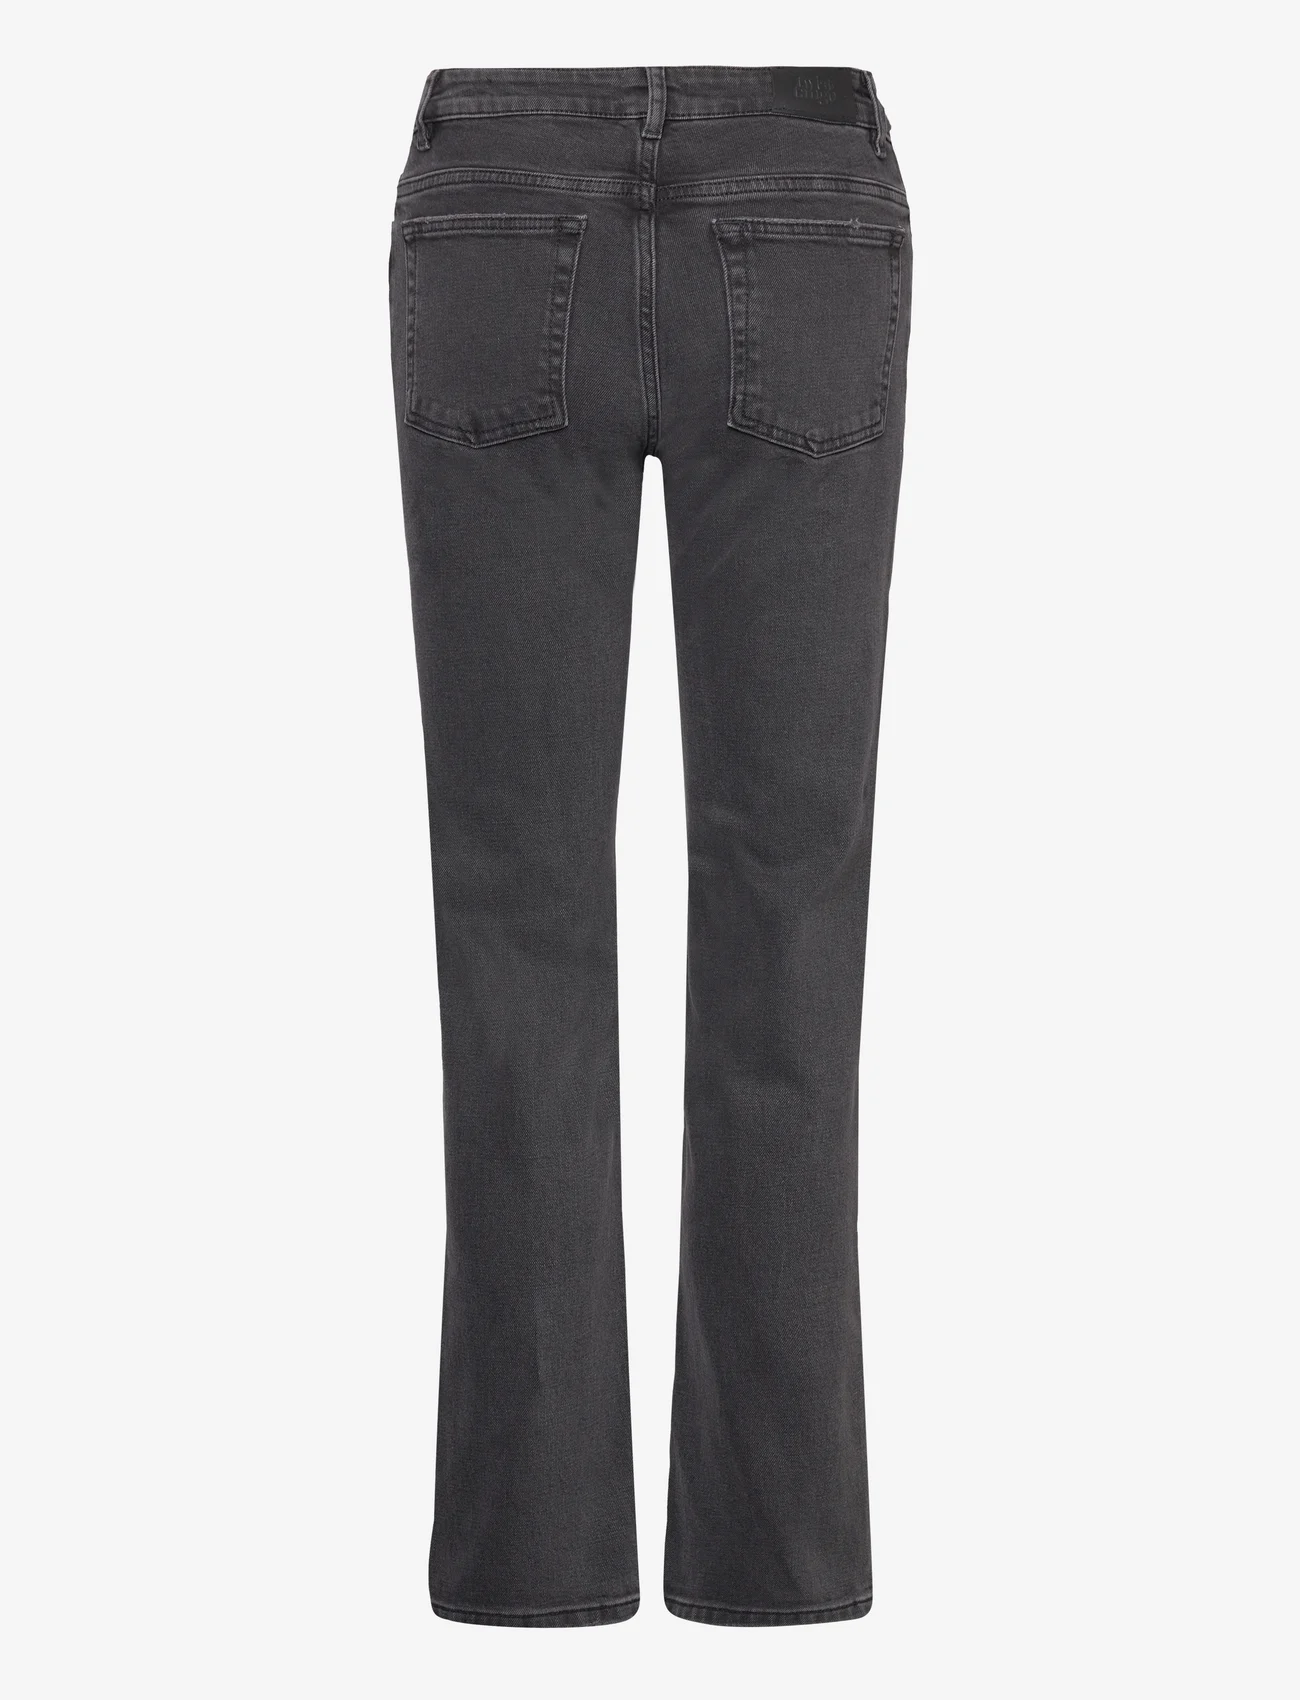 Twist & Tango - Wendy Jeans - slim jeans - blackish grey - 1